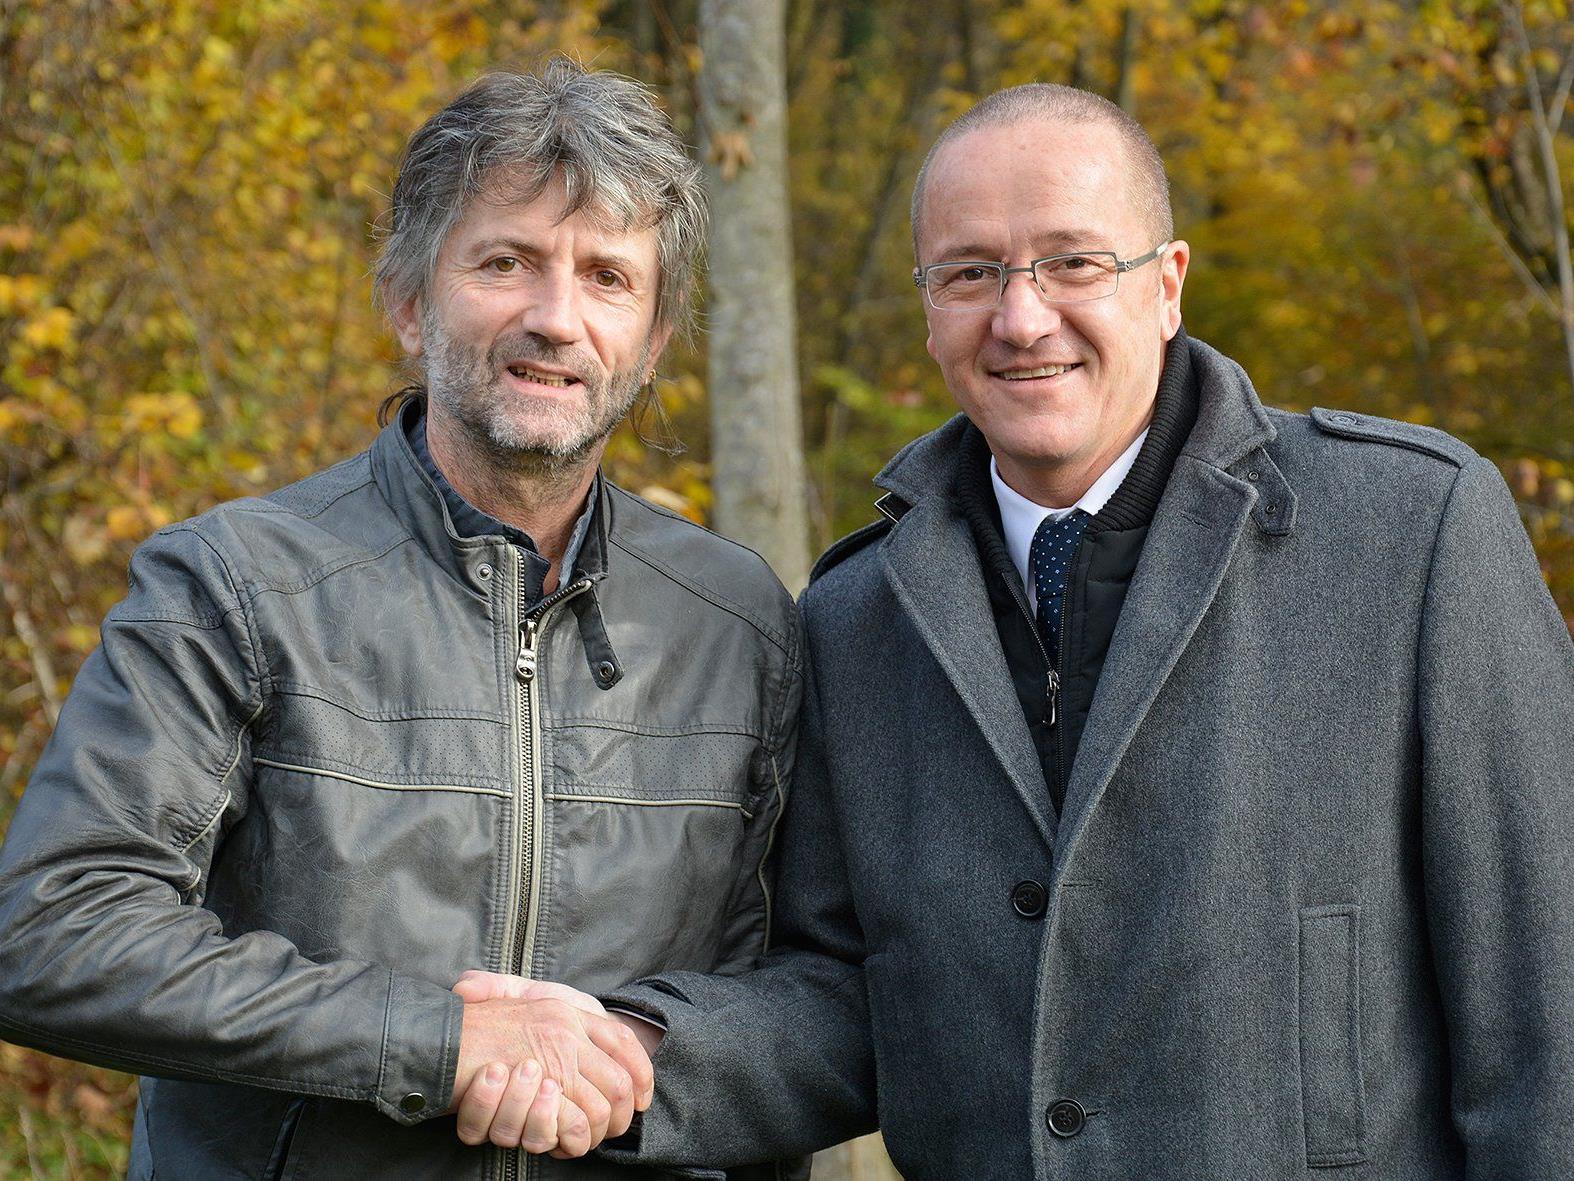 Landesumweltanwalt Wolfgang Wiener und Guido Felix, Vorsitzender der Geschäftsführung der MACO-Gruppe, sind mit dem Verhandlungsergebnis zufrieden.